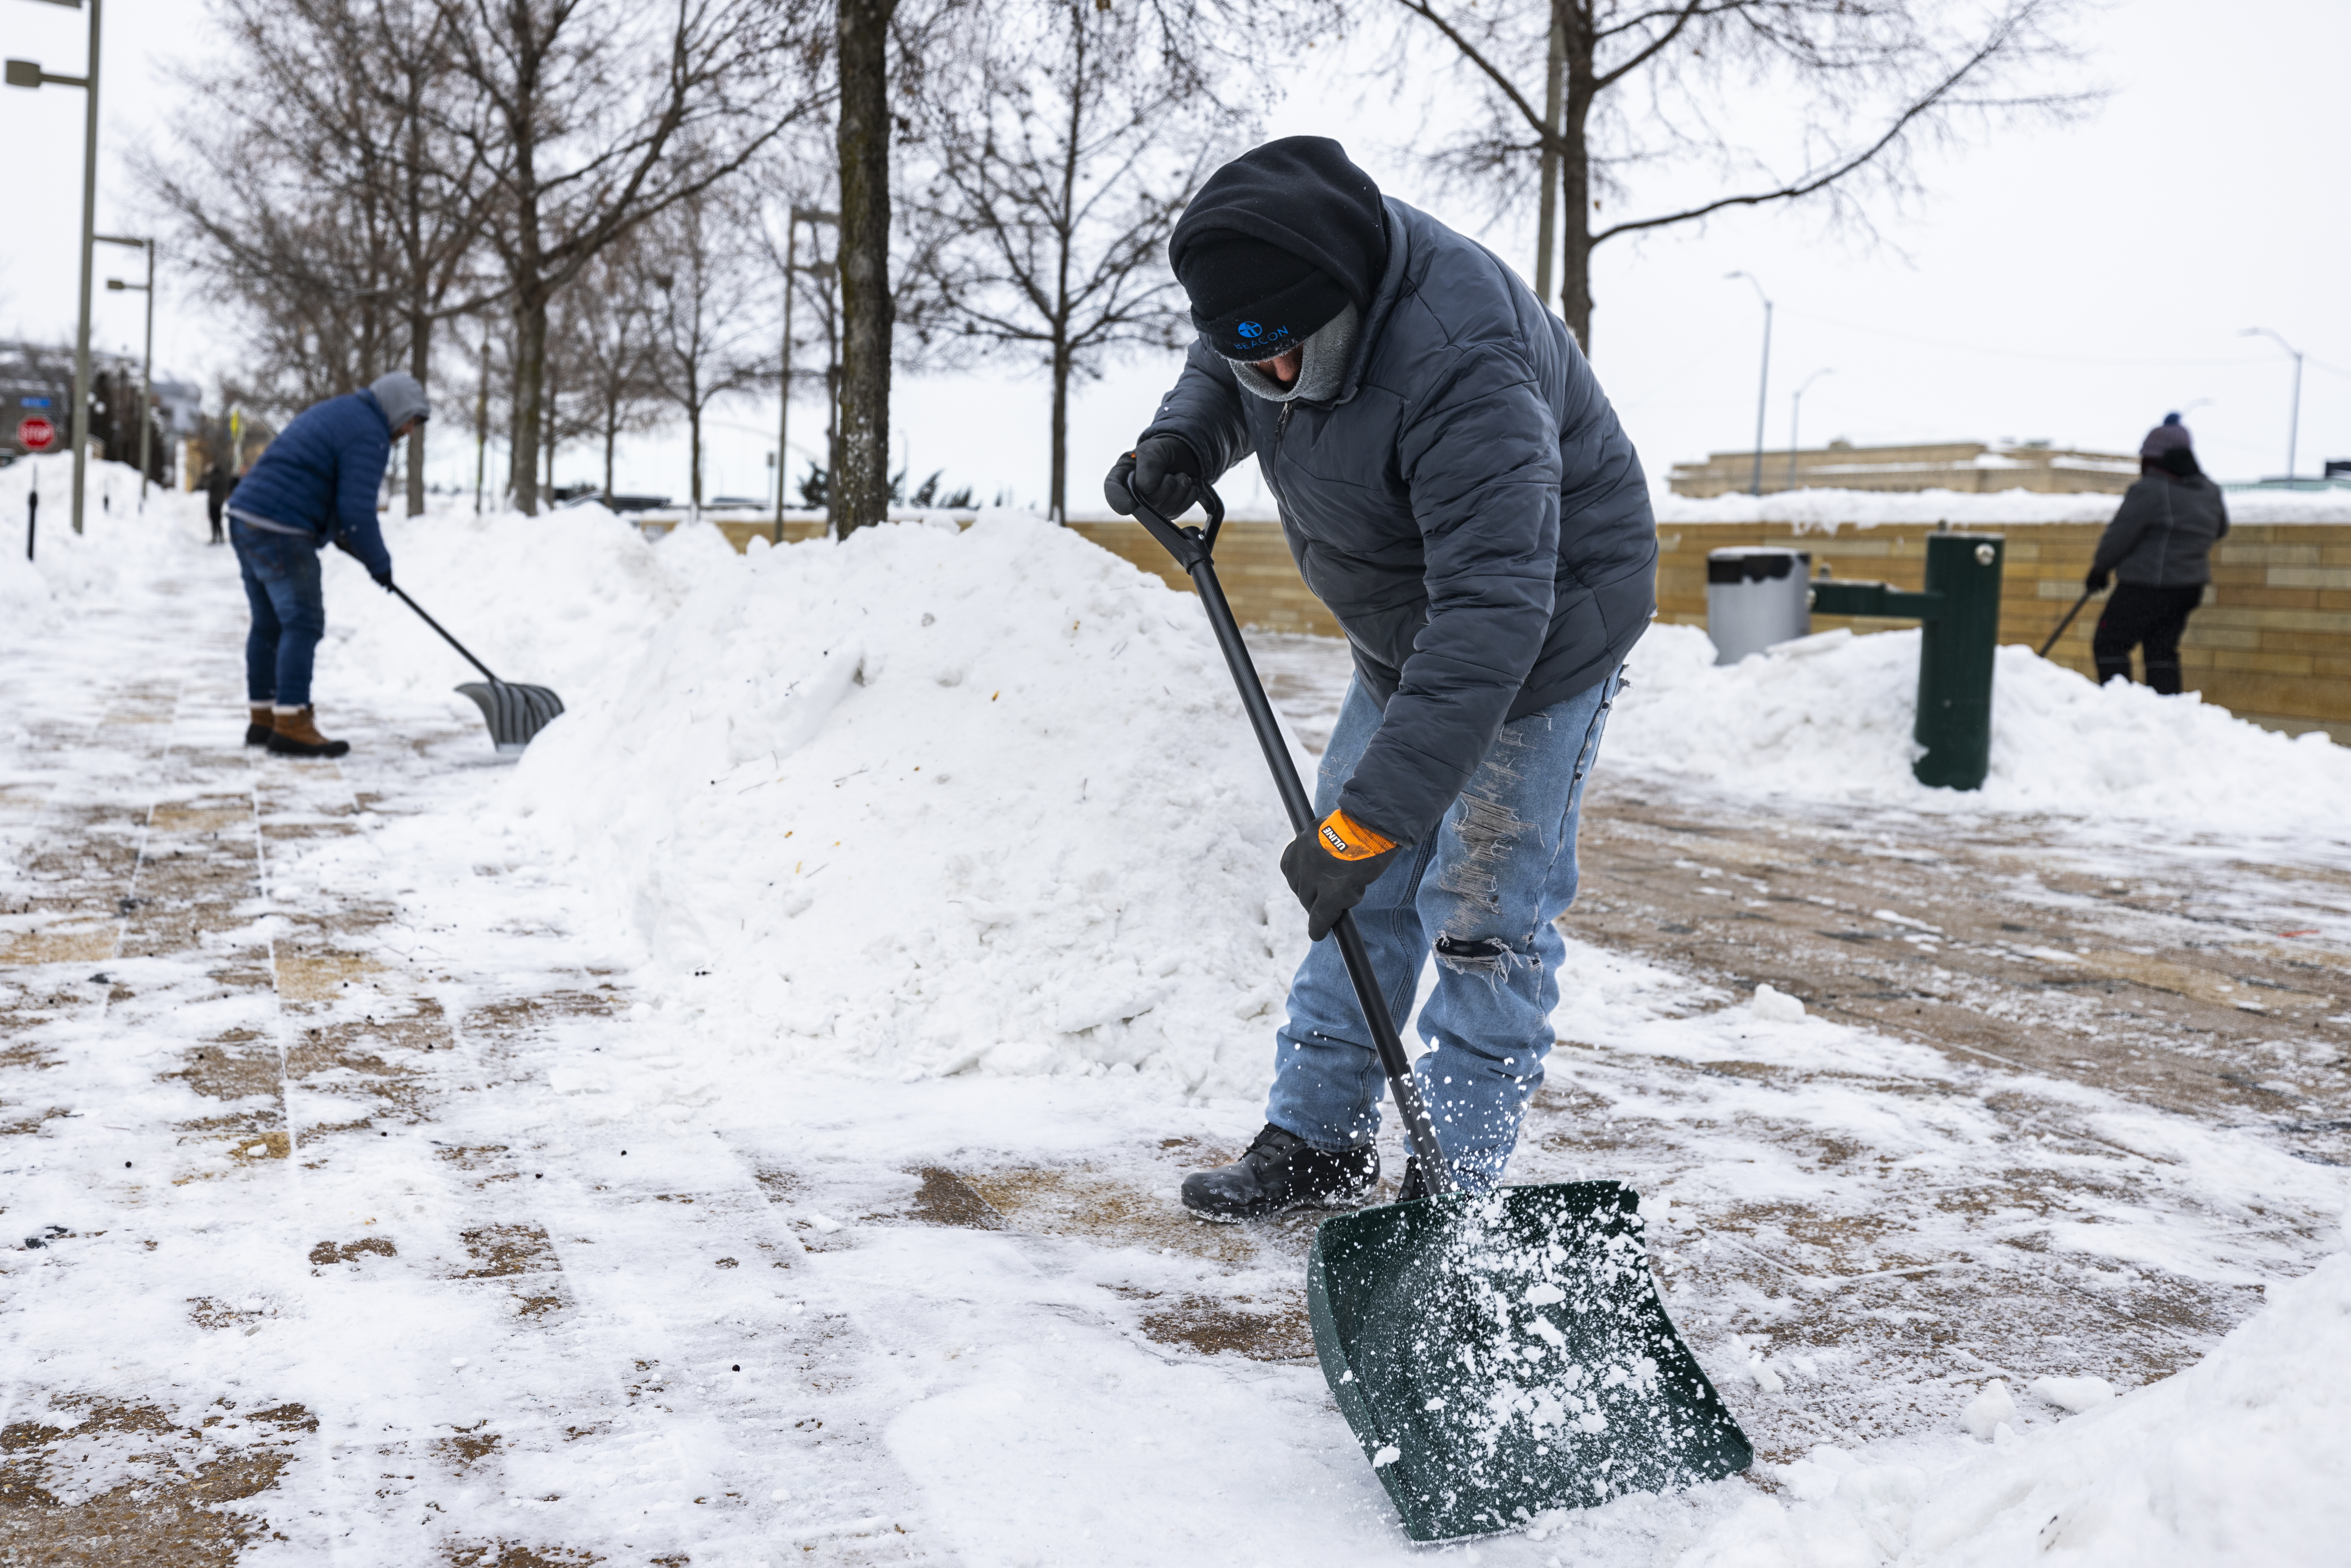 Jornaleros quitan nieve de la acera en el centro de Des Moines, Iowa, el lunes mientras las temperaturas caen a ocho grados bajo cero Fahrenheit.